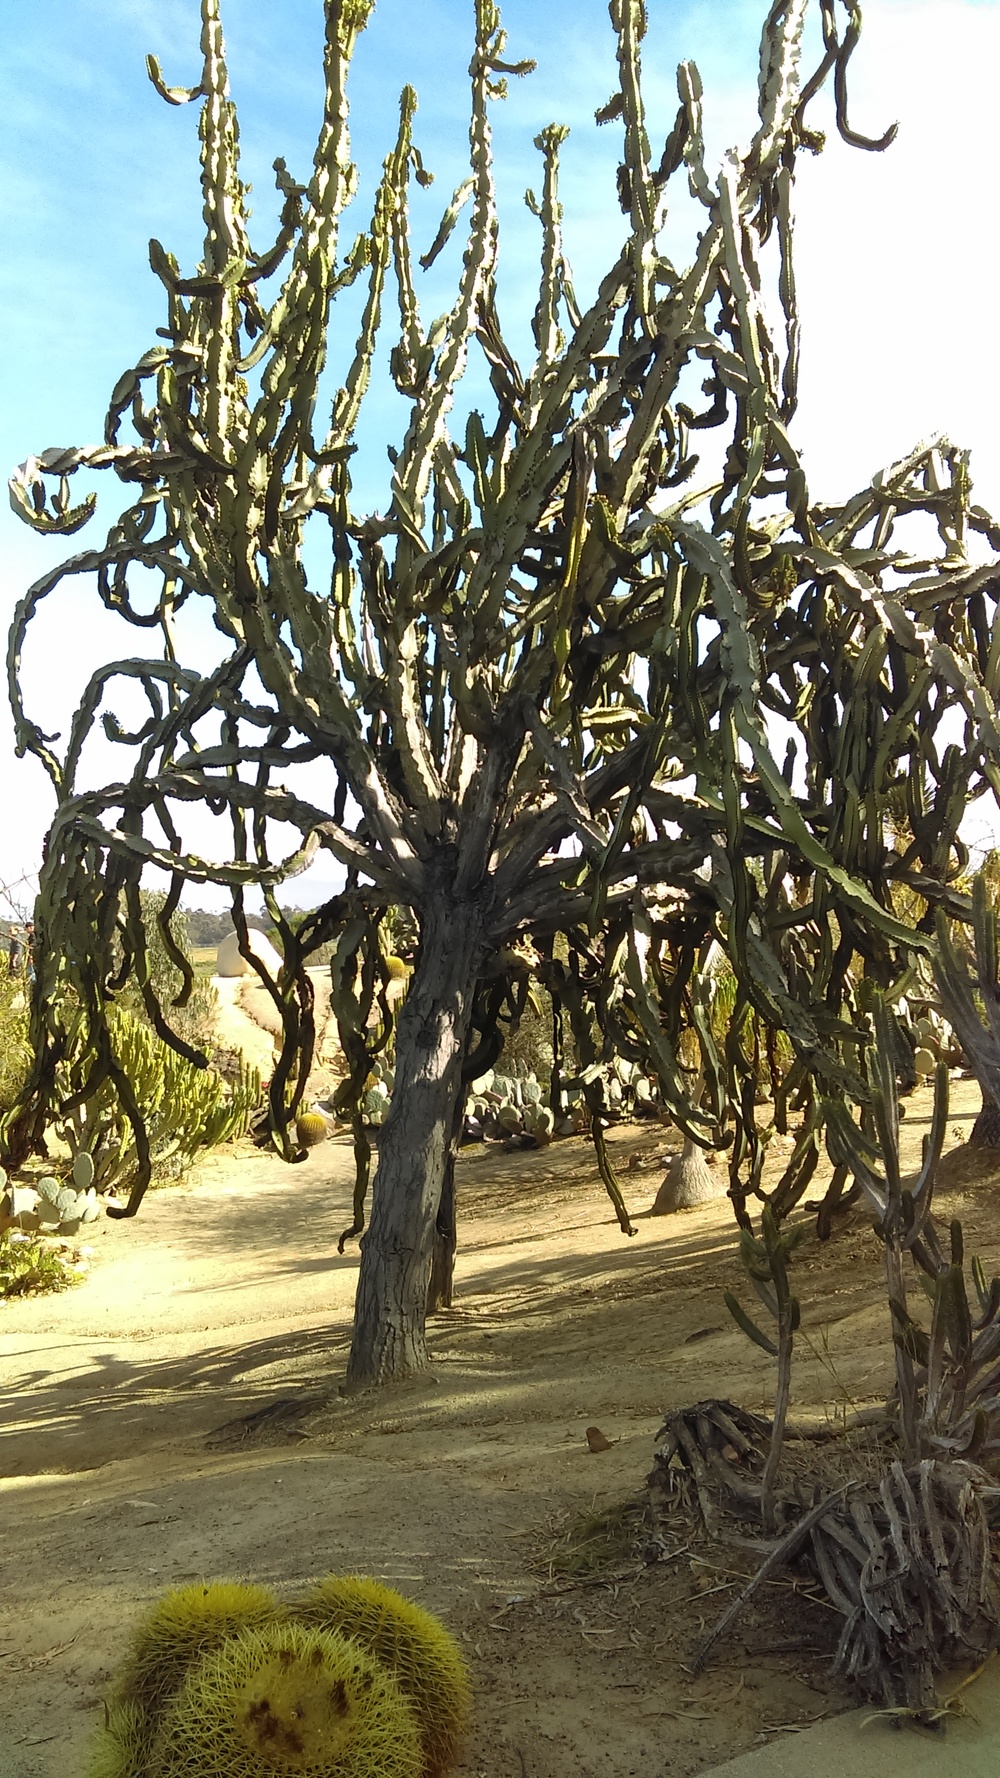 Stevko-San Diego-Tree Cactus.jpg